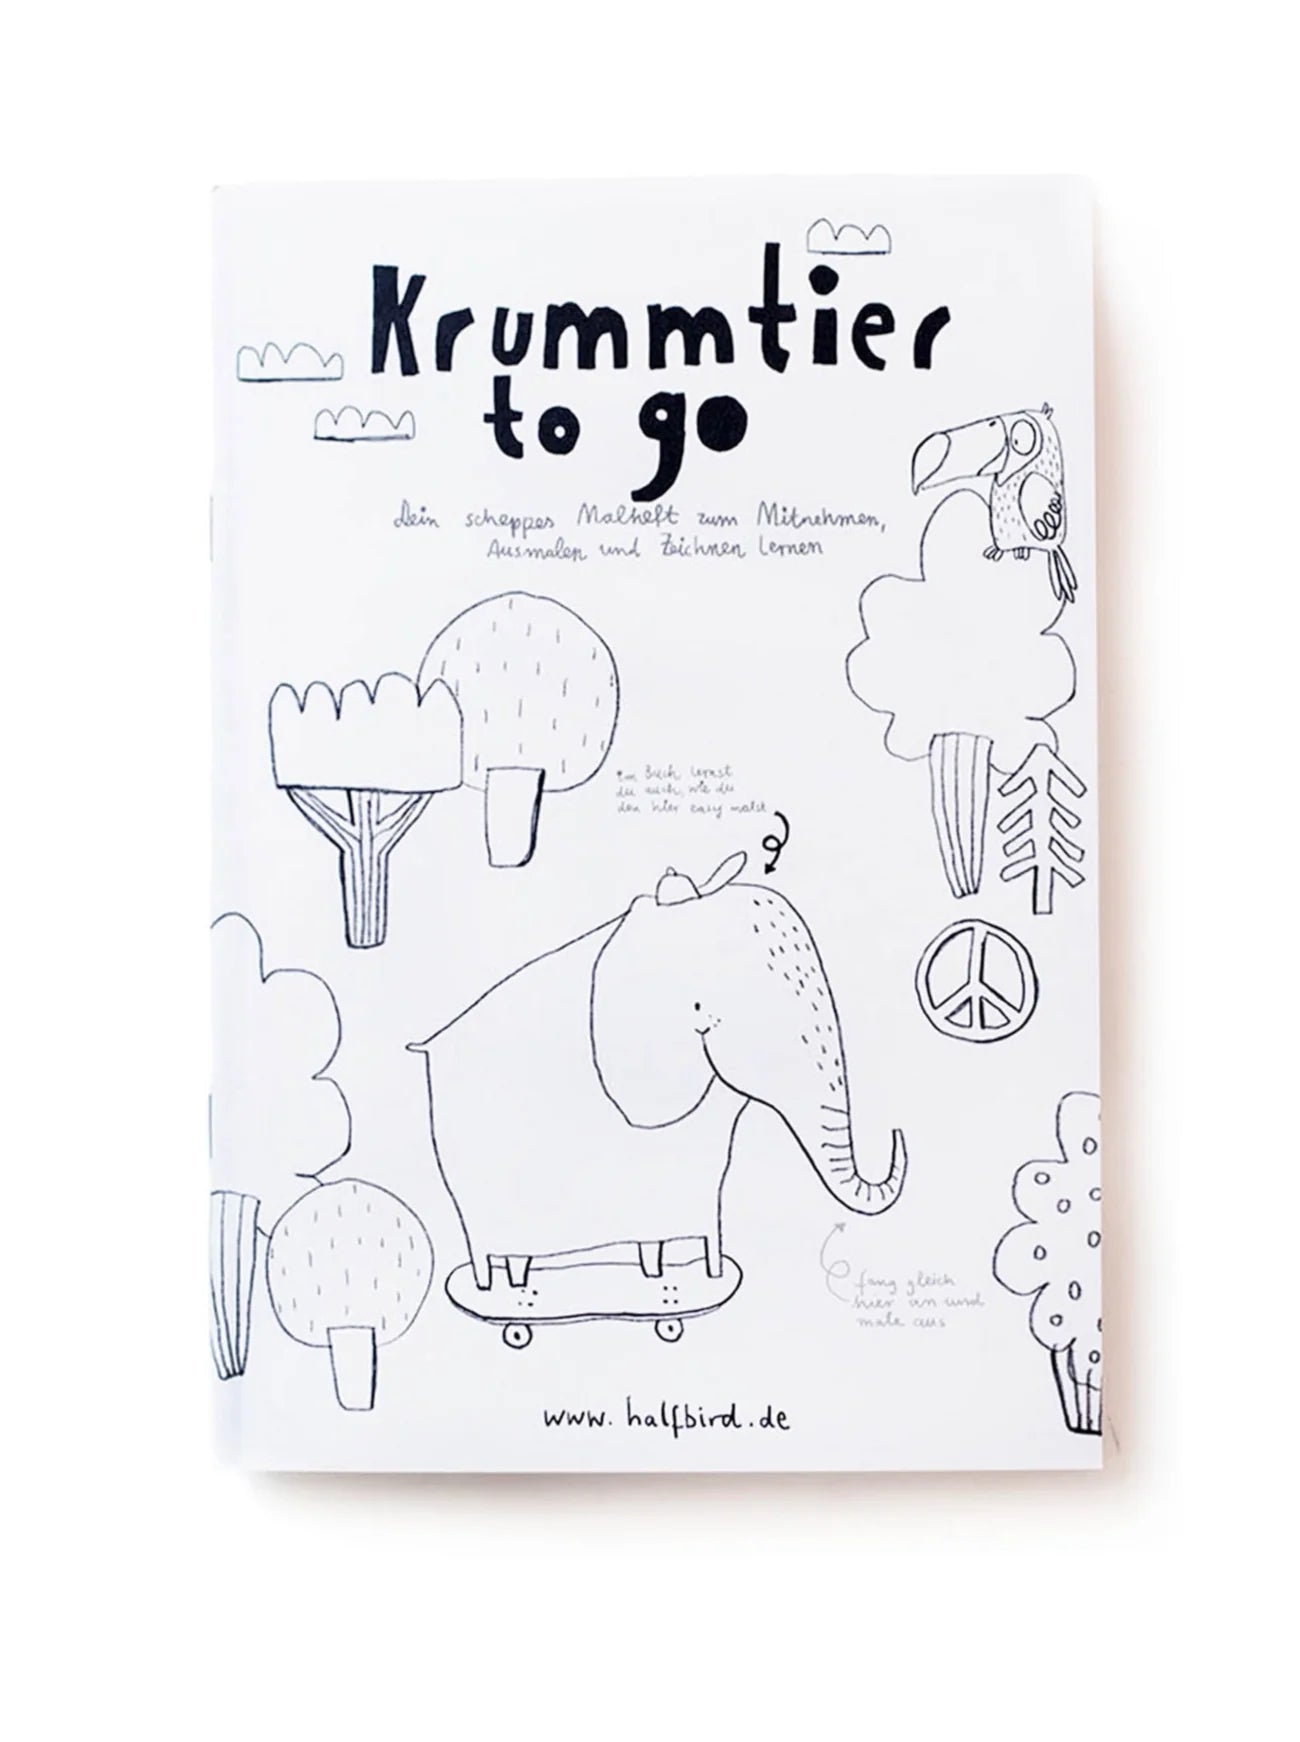 Ausmalbuch - Krummtier to go